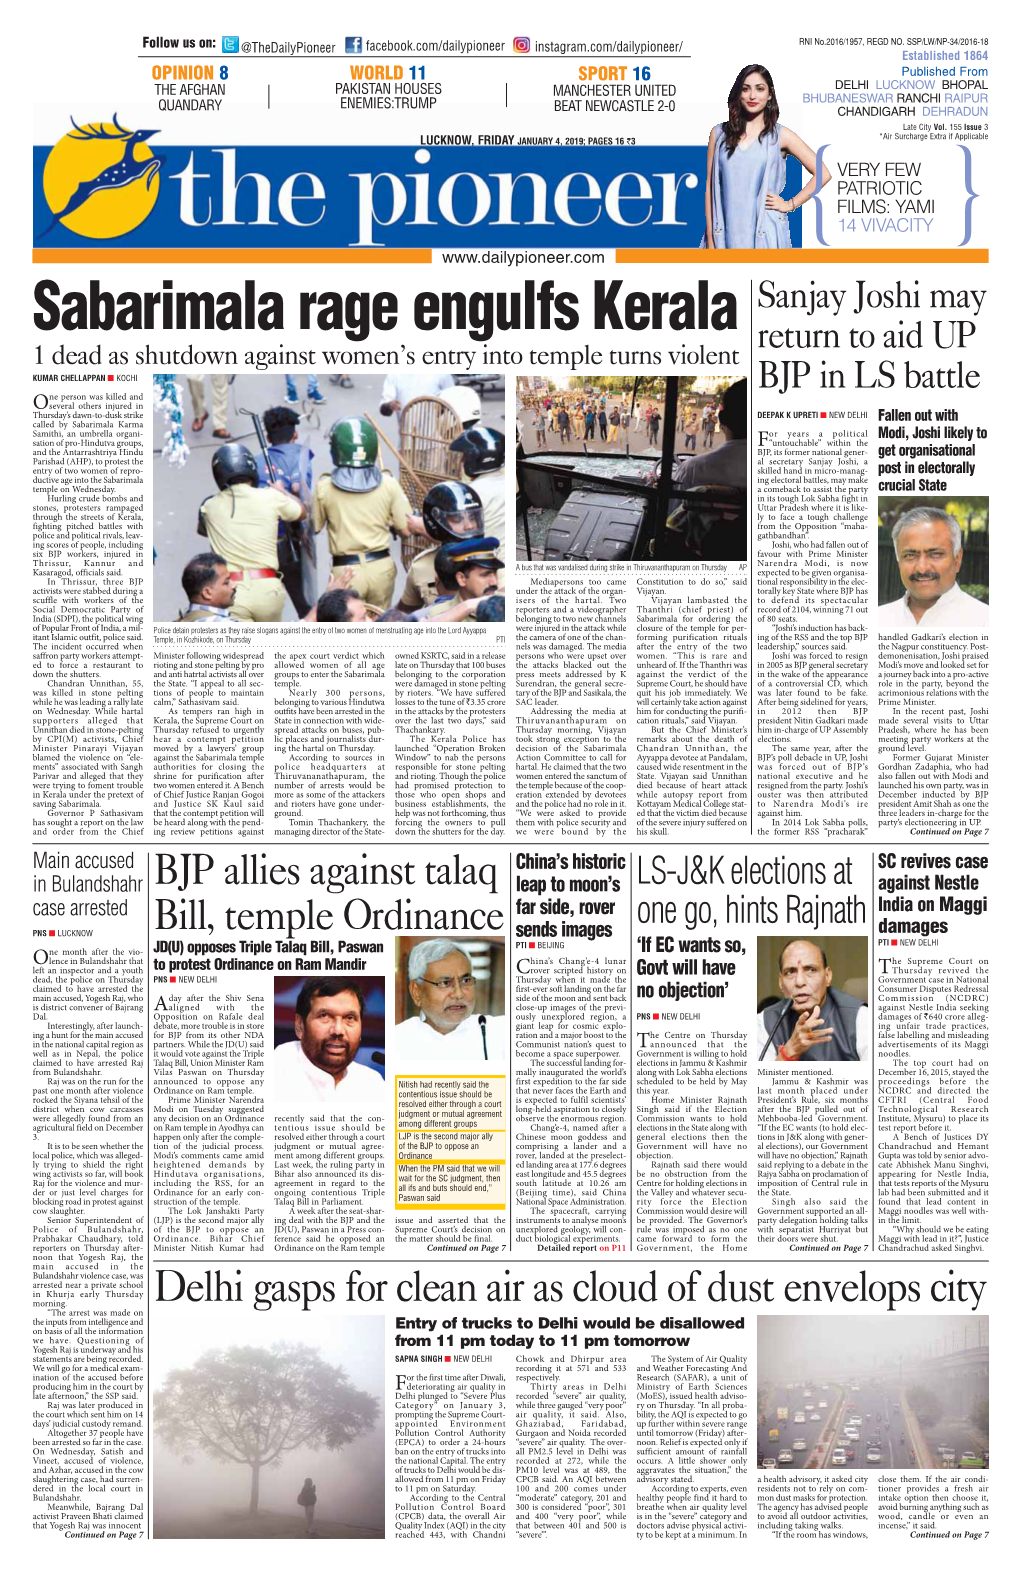 Sabarimala Rage Engulfs Kerala